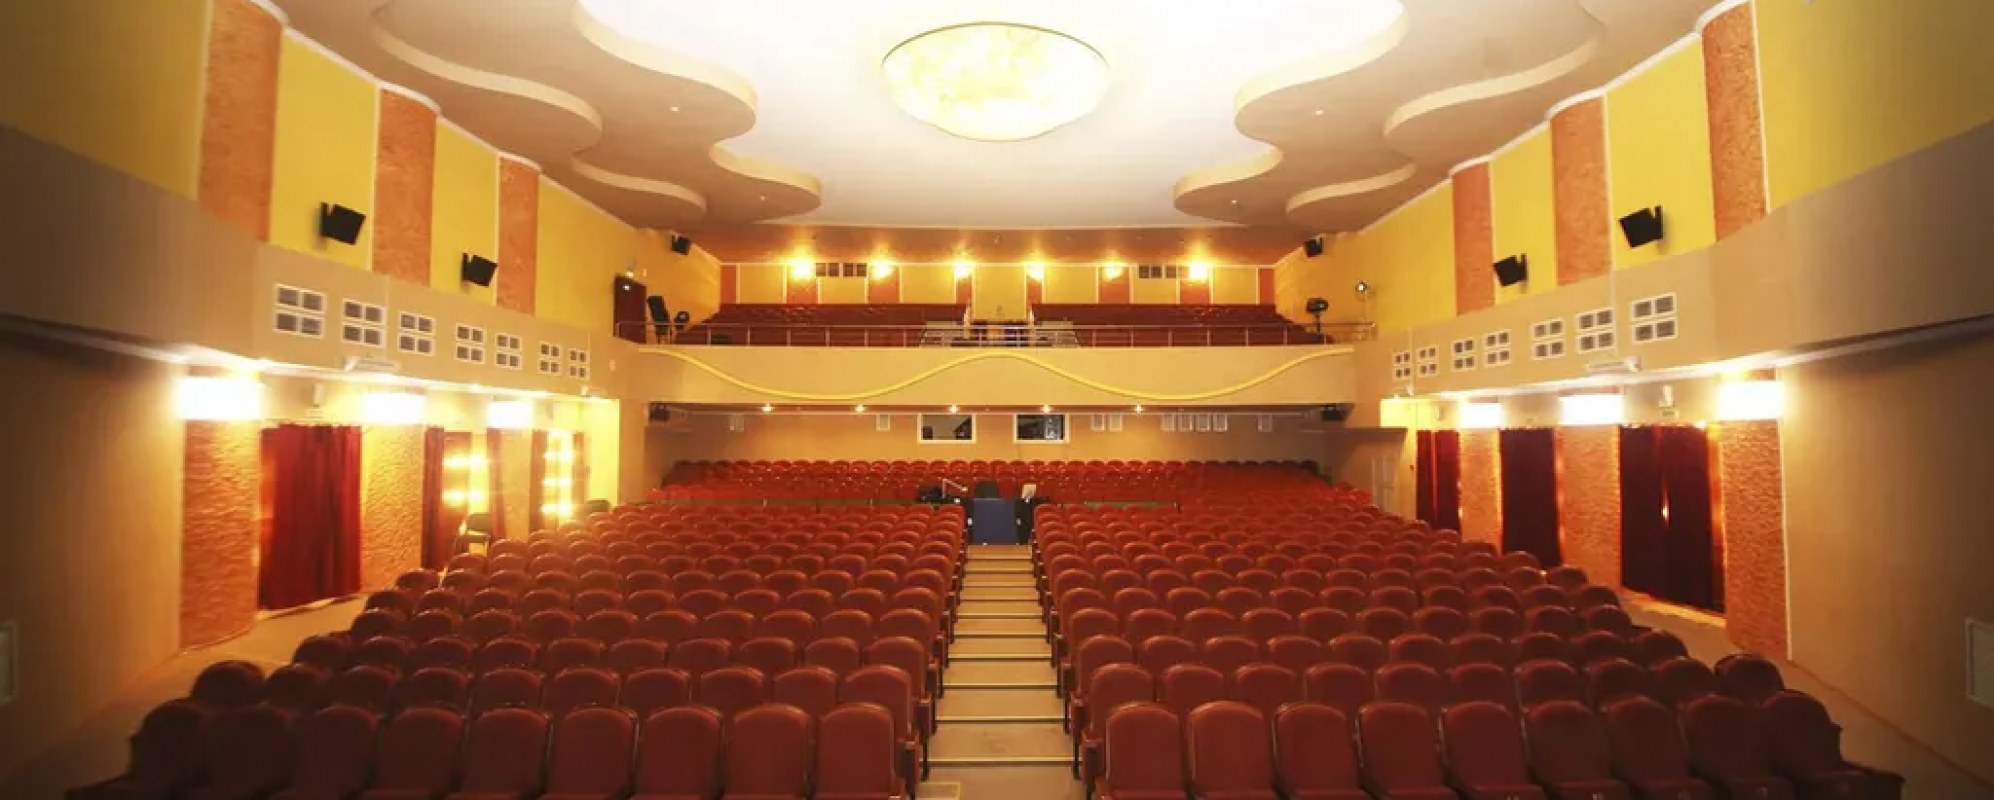 Фотографии концертного зала Концертный зал ДКИД